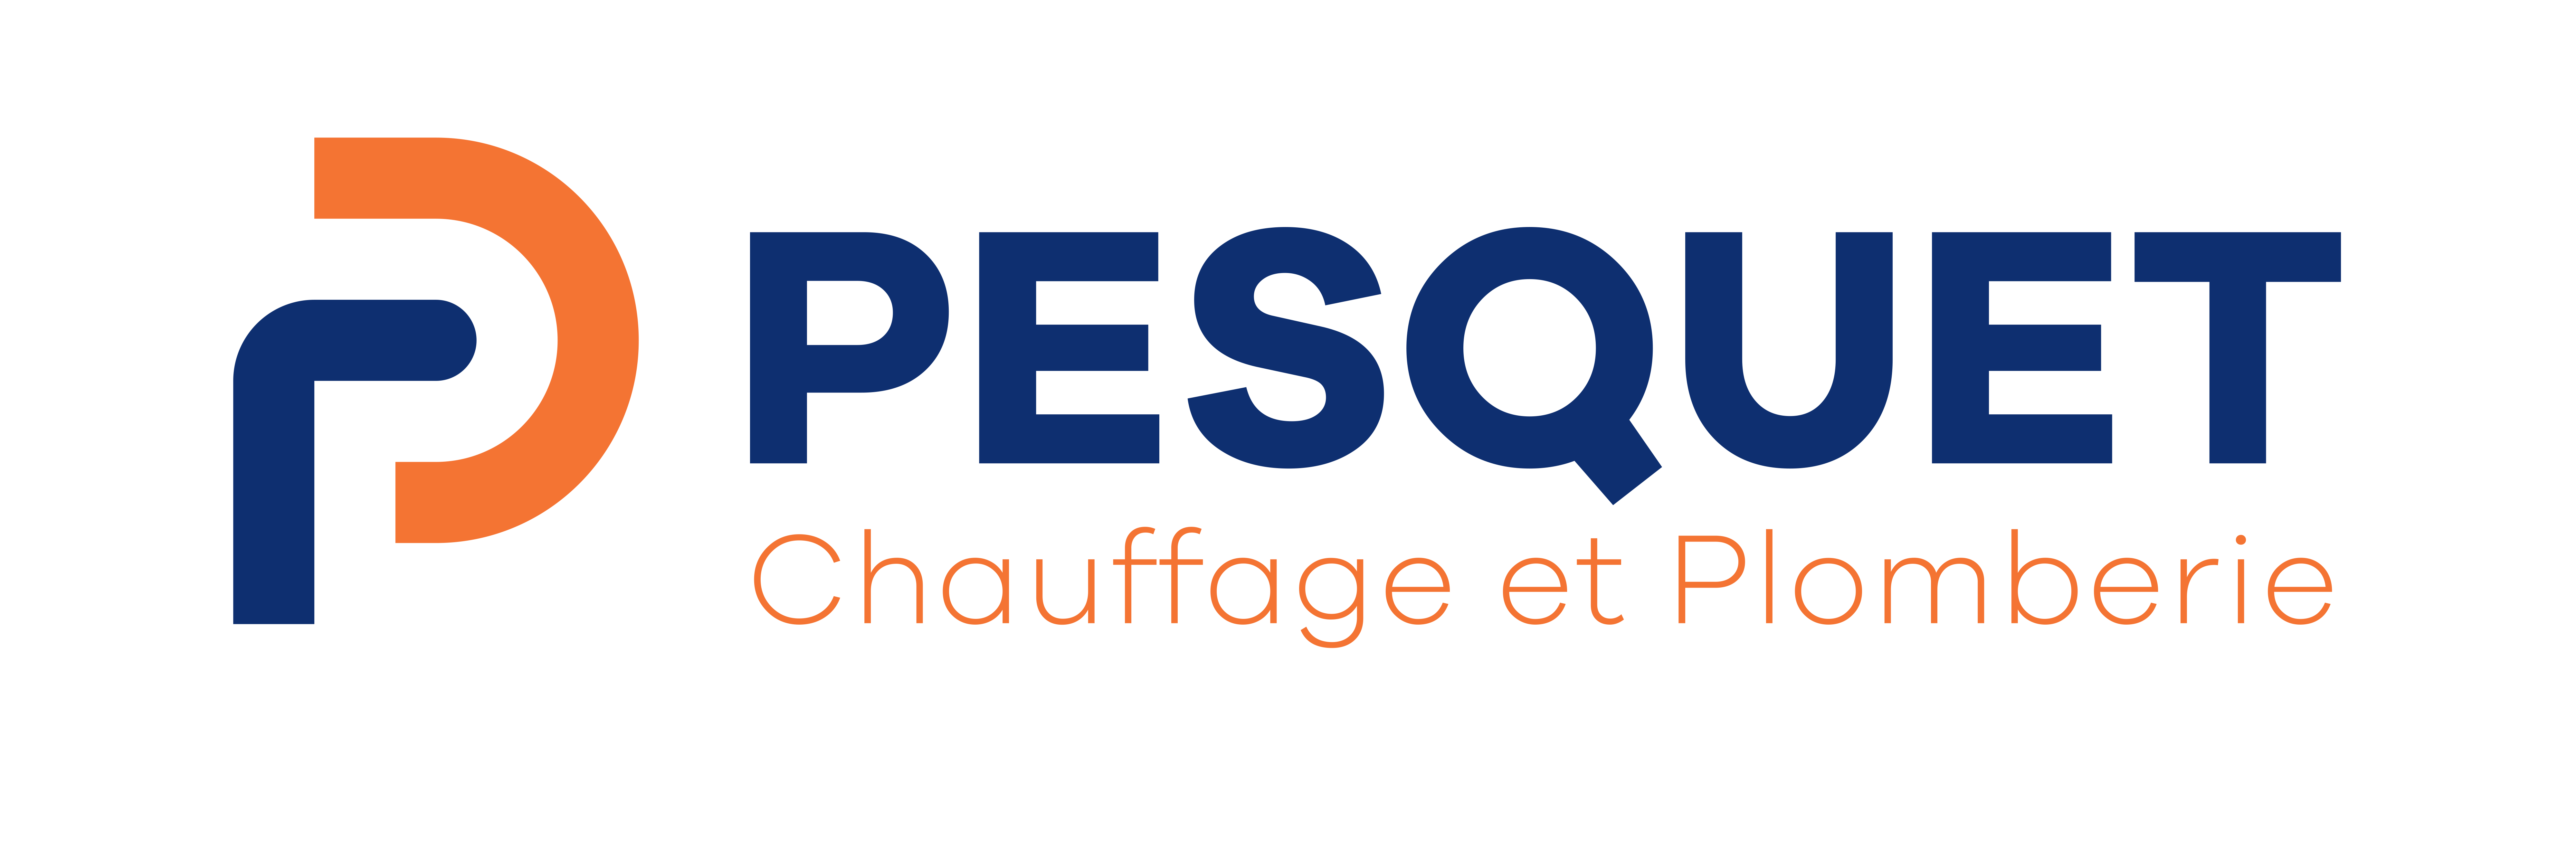 Logo Pesquet Chauffage et Plomberie - le Havre, Normandie